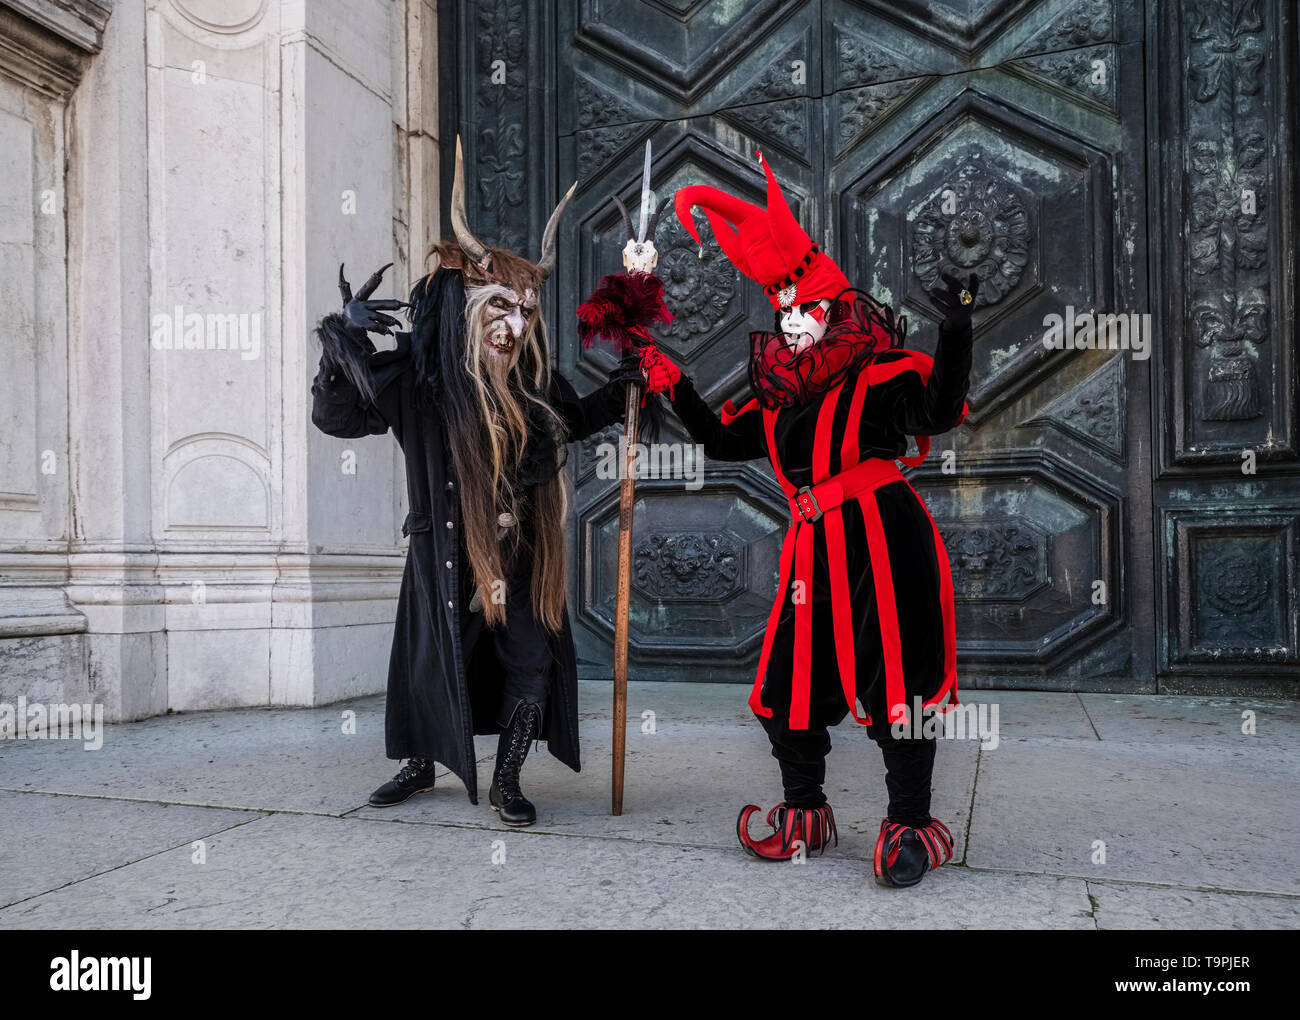 Una persona mascherata in un pauroso costume creativi e un altro in un costume di Arlecchino, celebra il Carnevale Veneziano Foto Stock